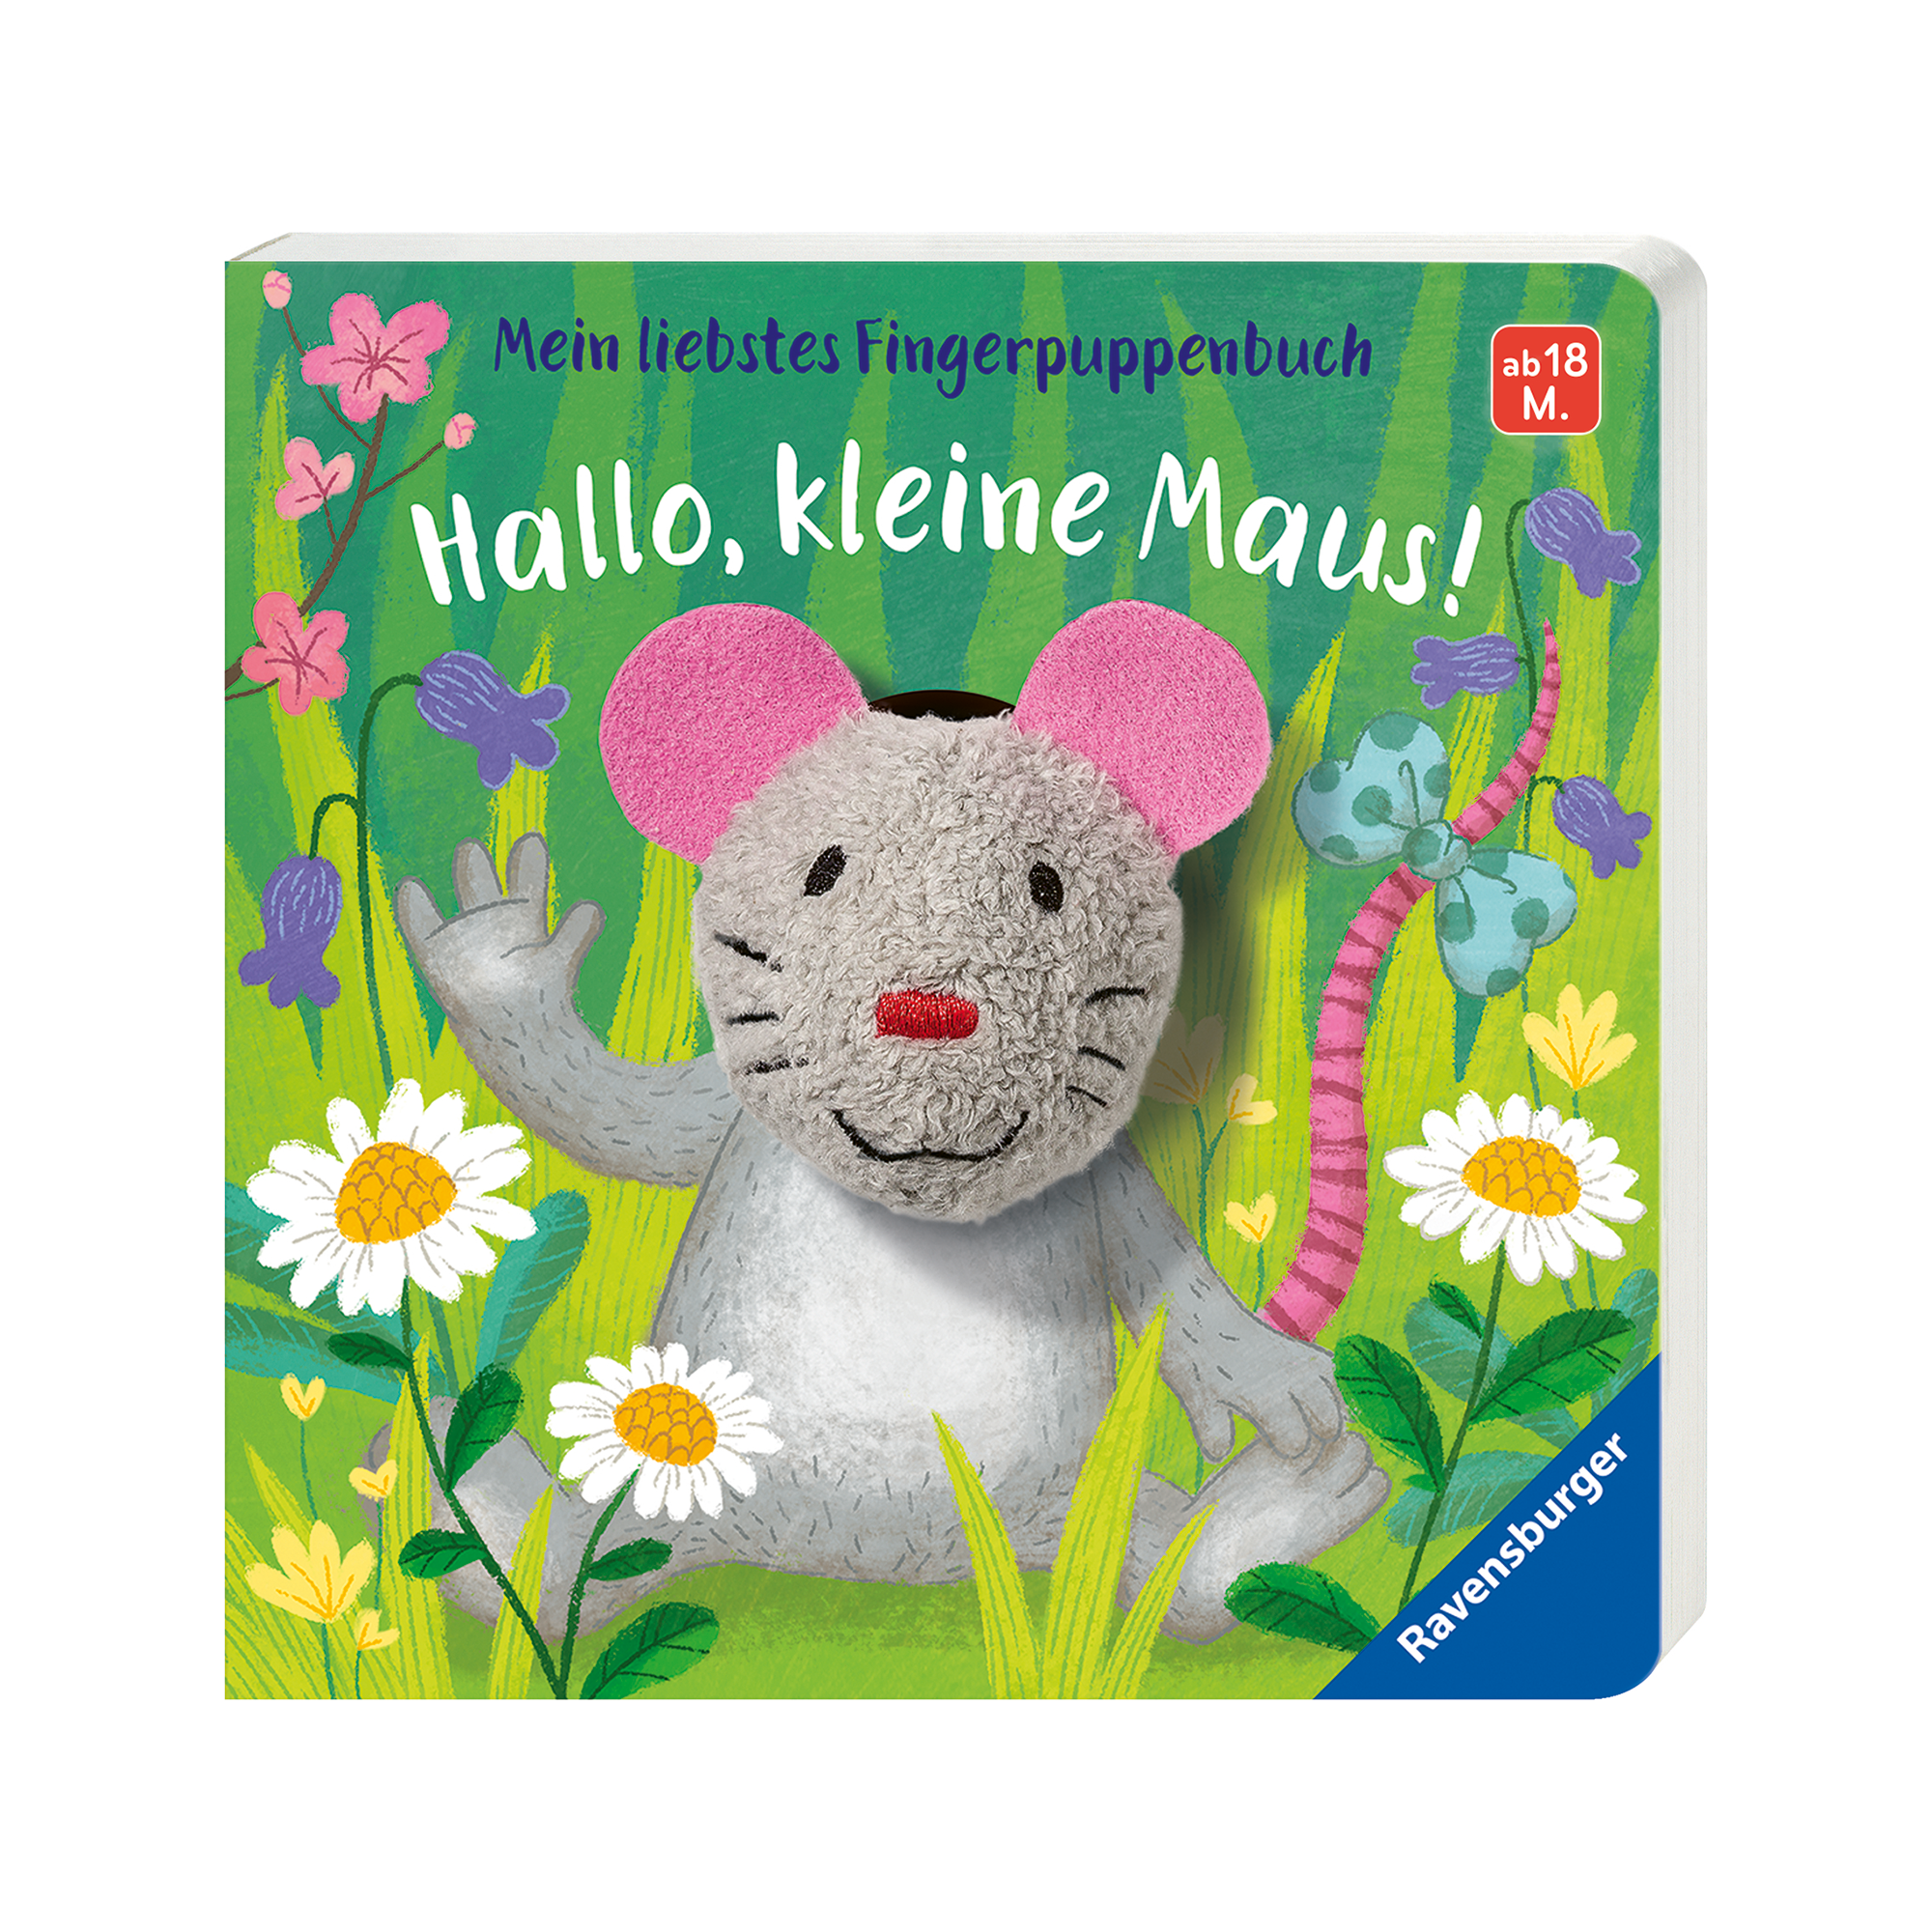 Mein liebstes Fingerpuppenbuch: Hallo kleine Maus! Ravensburger Mehrfarbig 2000577843909 1